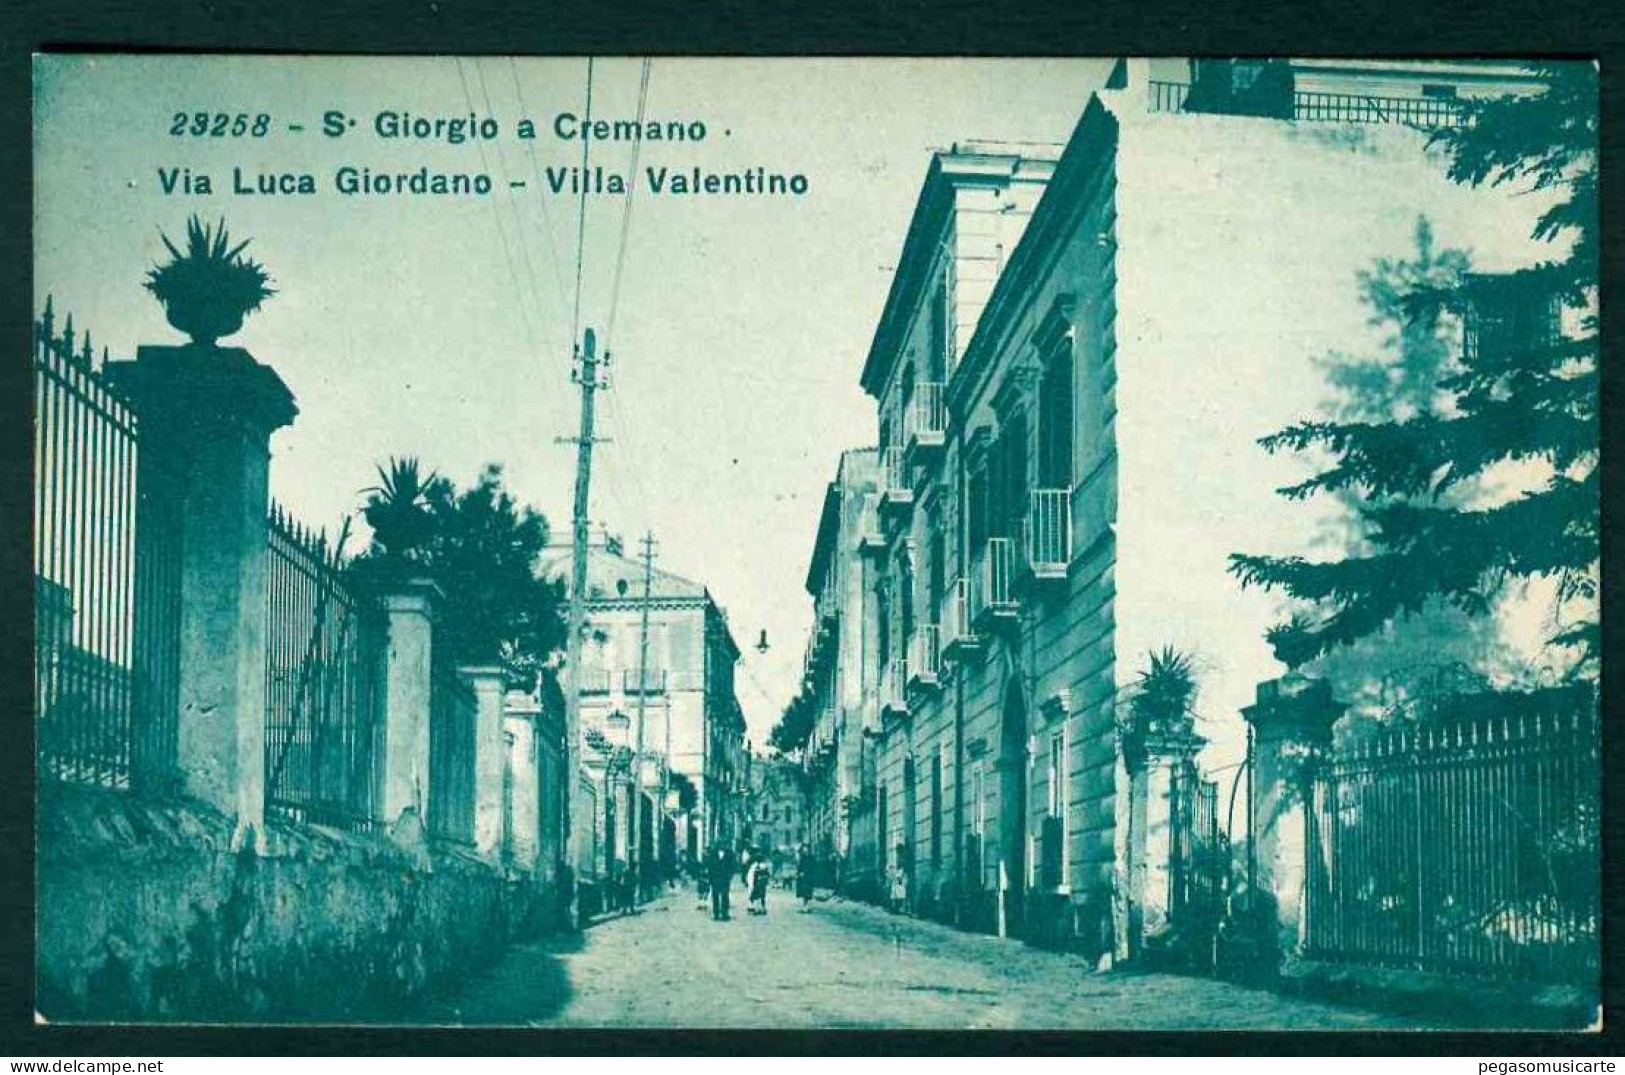 BB366 - S GIORGIO A CREMANO - VIA LUCA GIORDANO - VILLA VALENTINO - ANIMATA 1930 CIRCA - San Giorgio